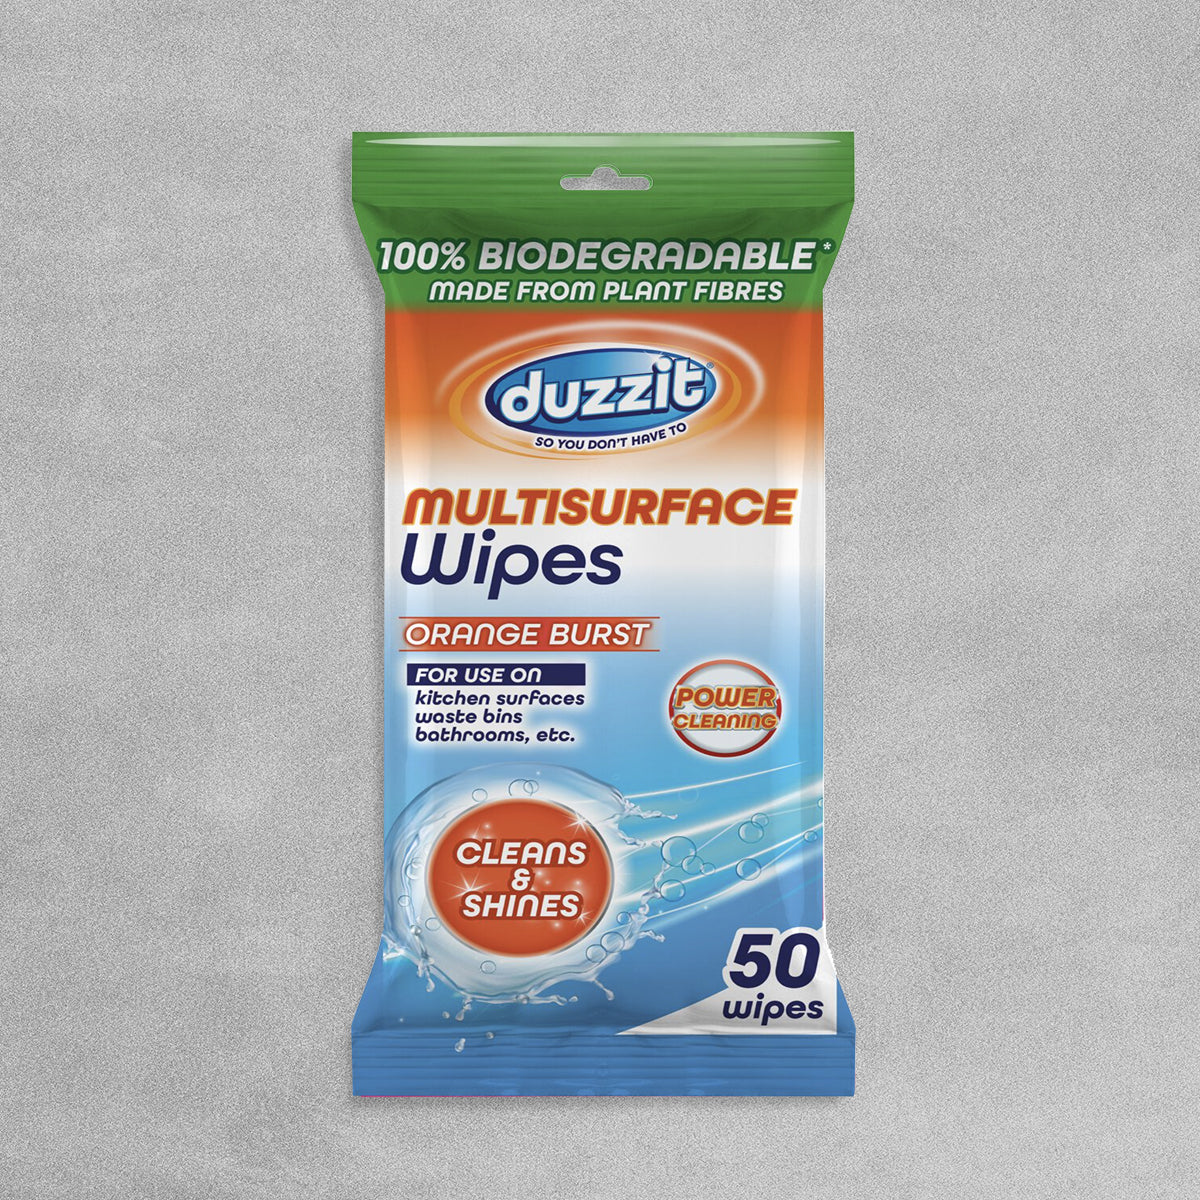 Duzzit Multisurface Wipes 'Orange Burst' - Pack of 50